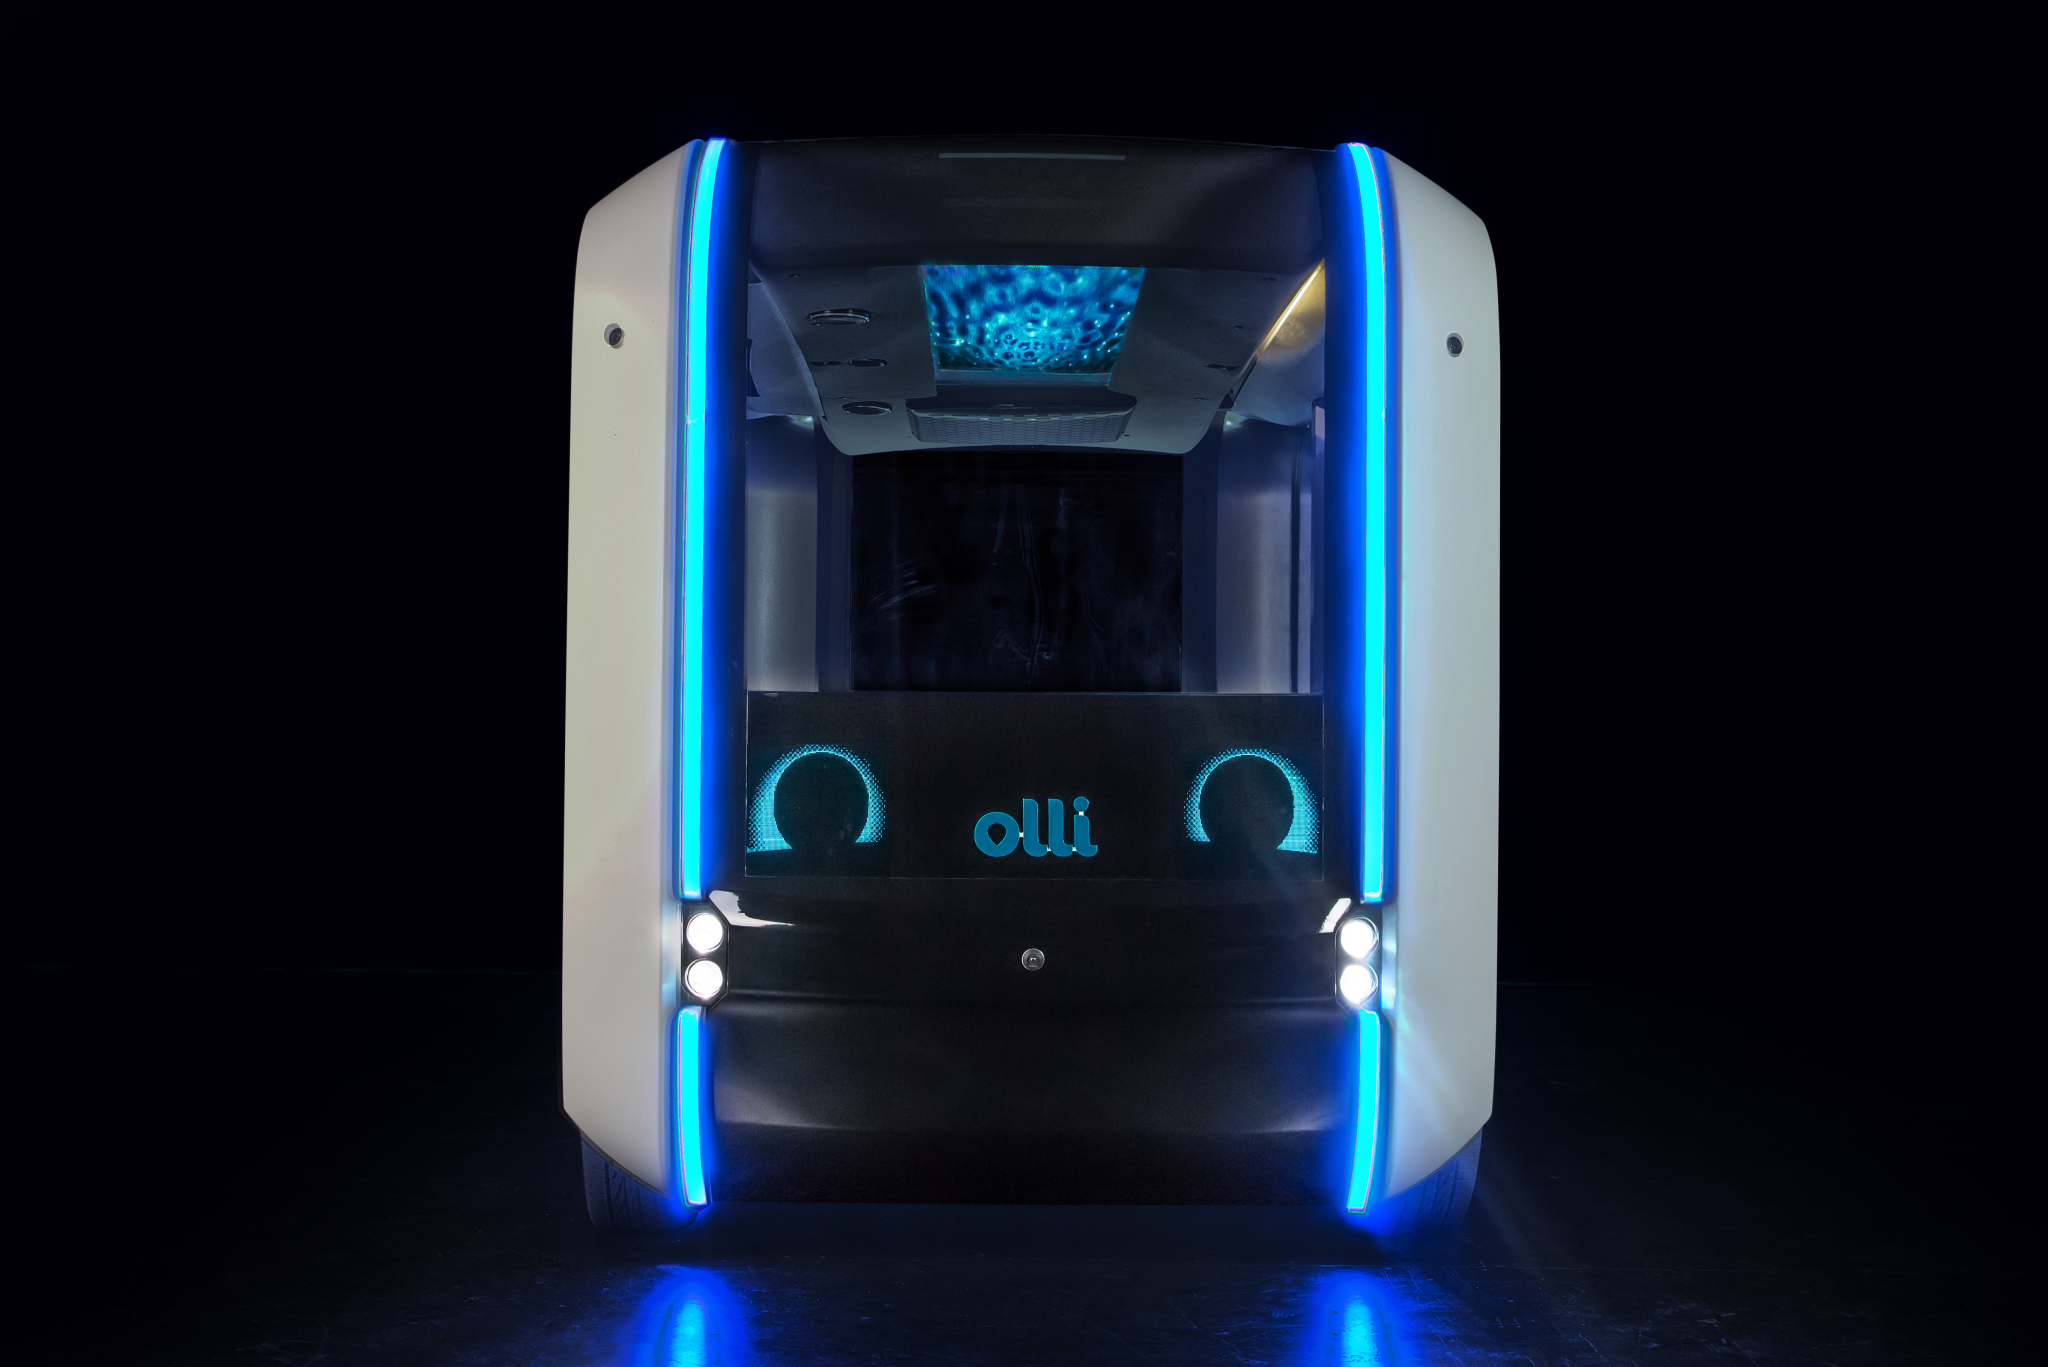 Ollie 2.0 autonomous shuttle